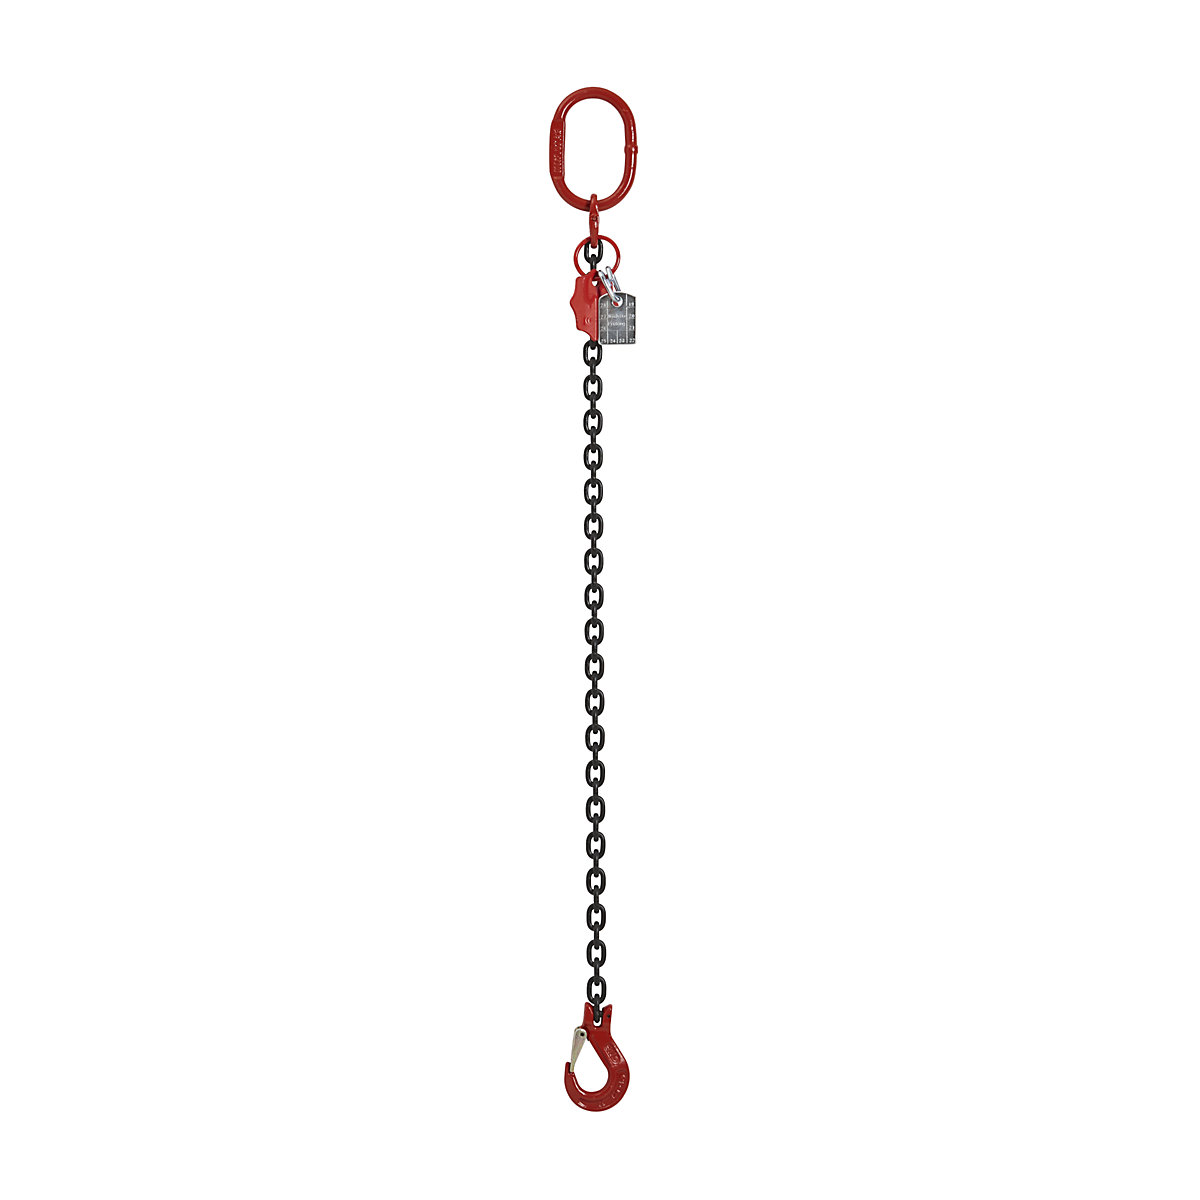 Vise dig Håndværker Tak for din hjælp GK8 chain sling: max. load 1120 kg, chain thickness 6 mm | KAISER+KRAFT